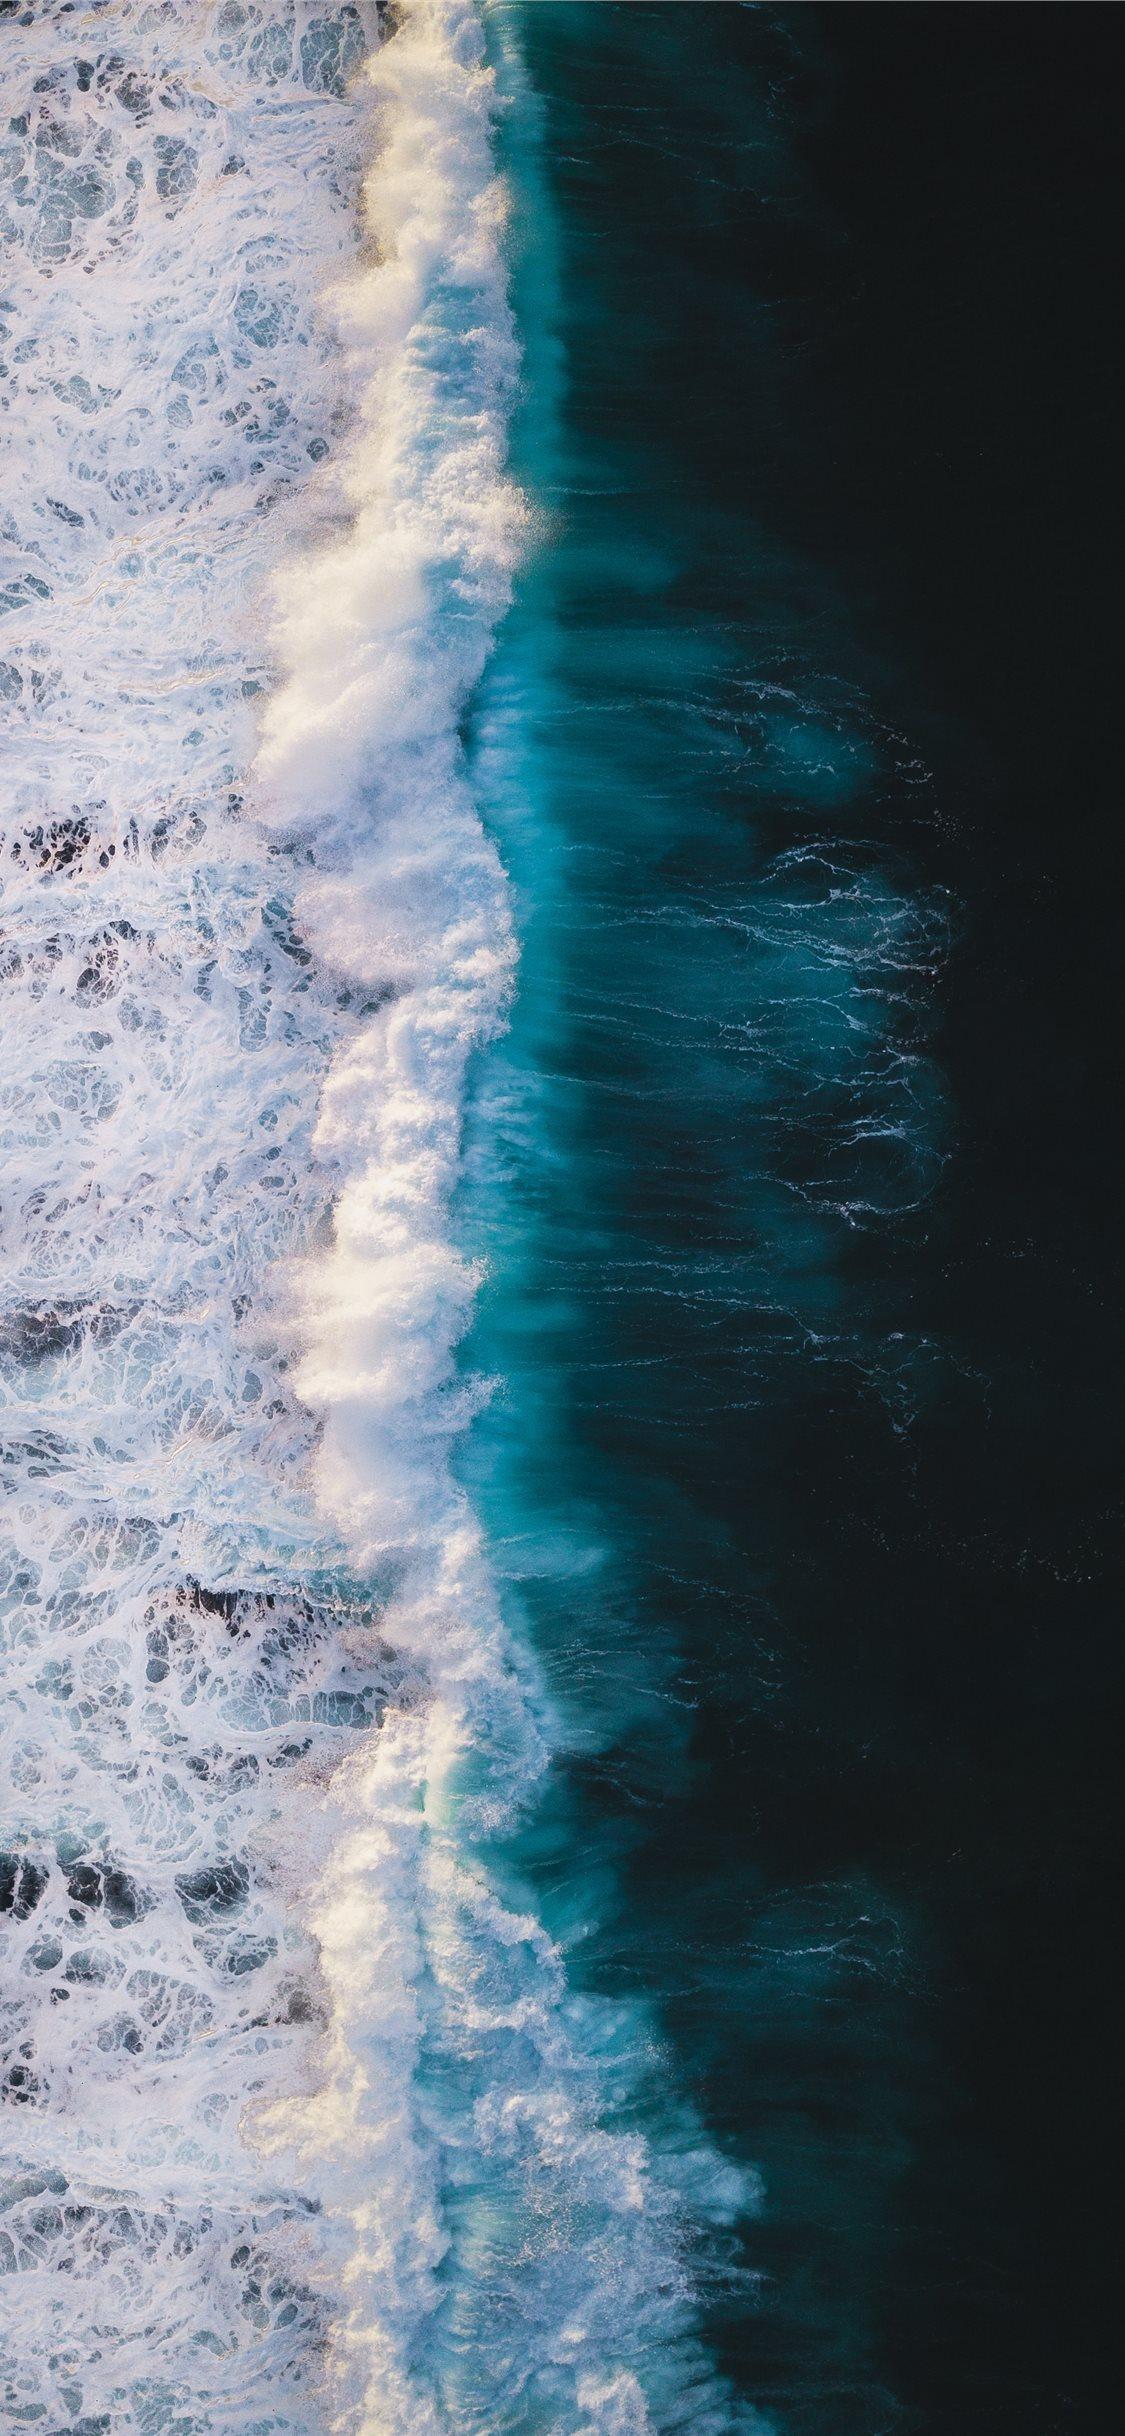 Ocean wave iPhone X Wallpaper Free Download